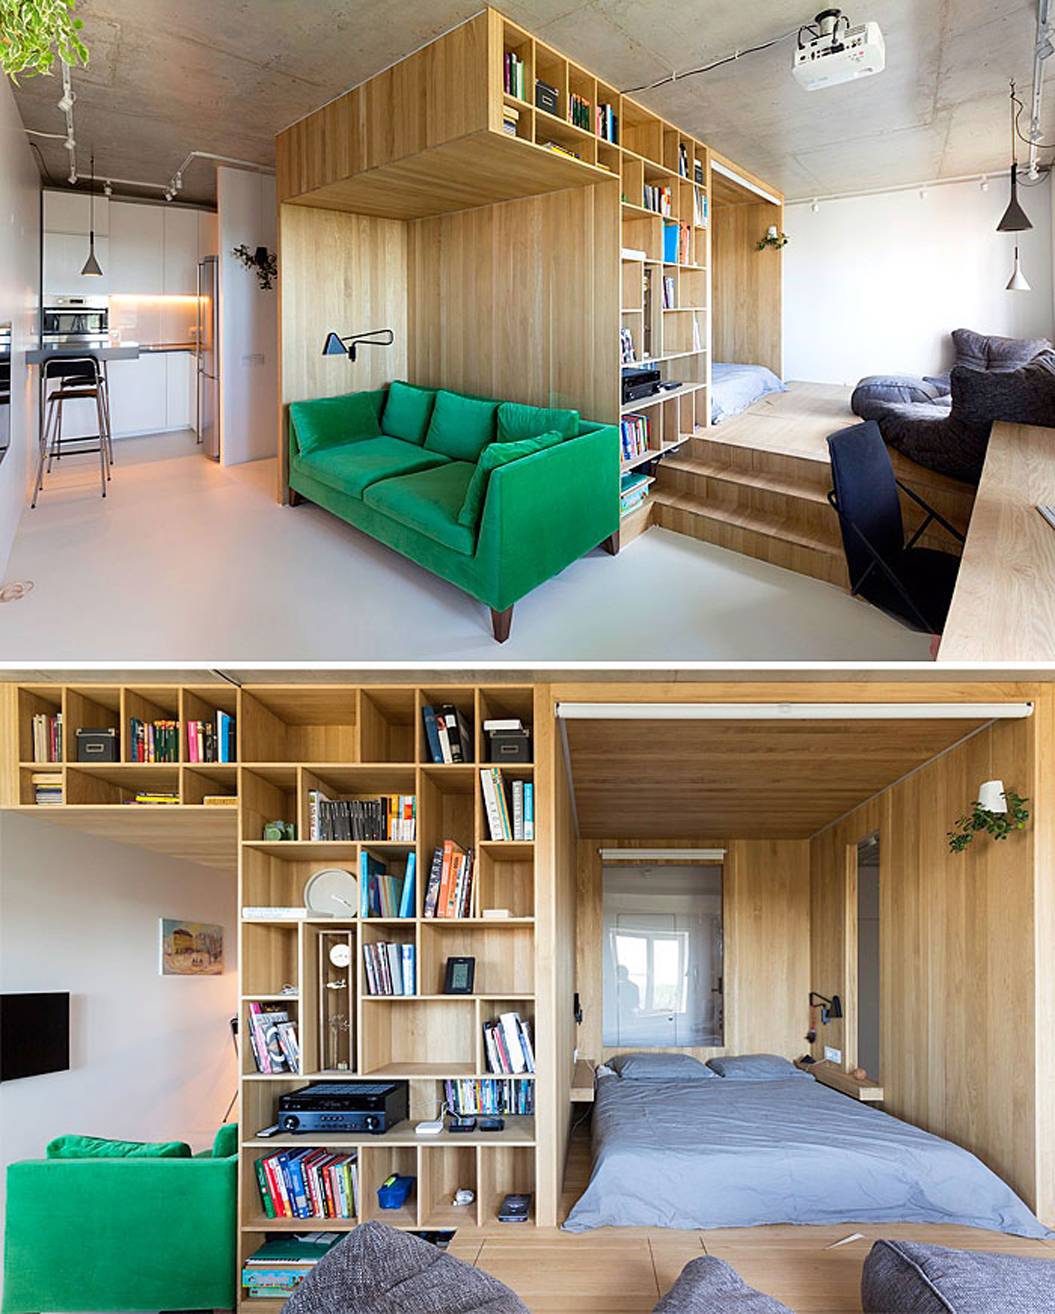 Дизайн квартиры студии 30 кв. м. - 50 лучших фото идей по оформлению интерьера